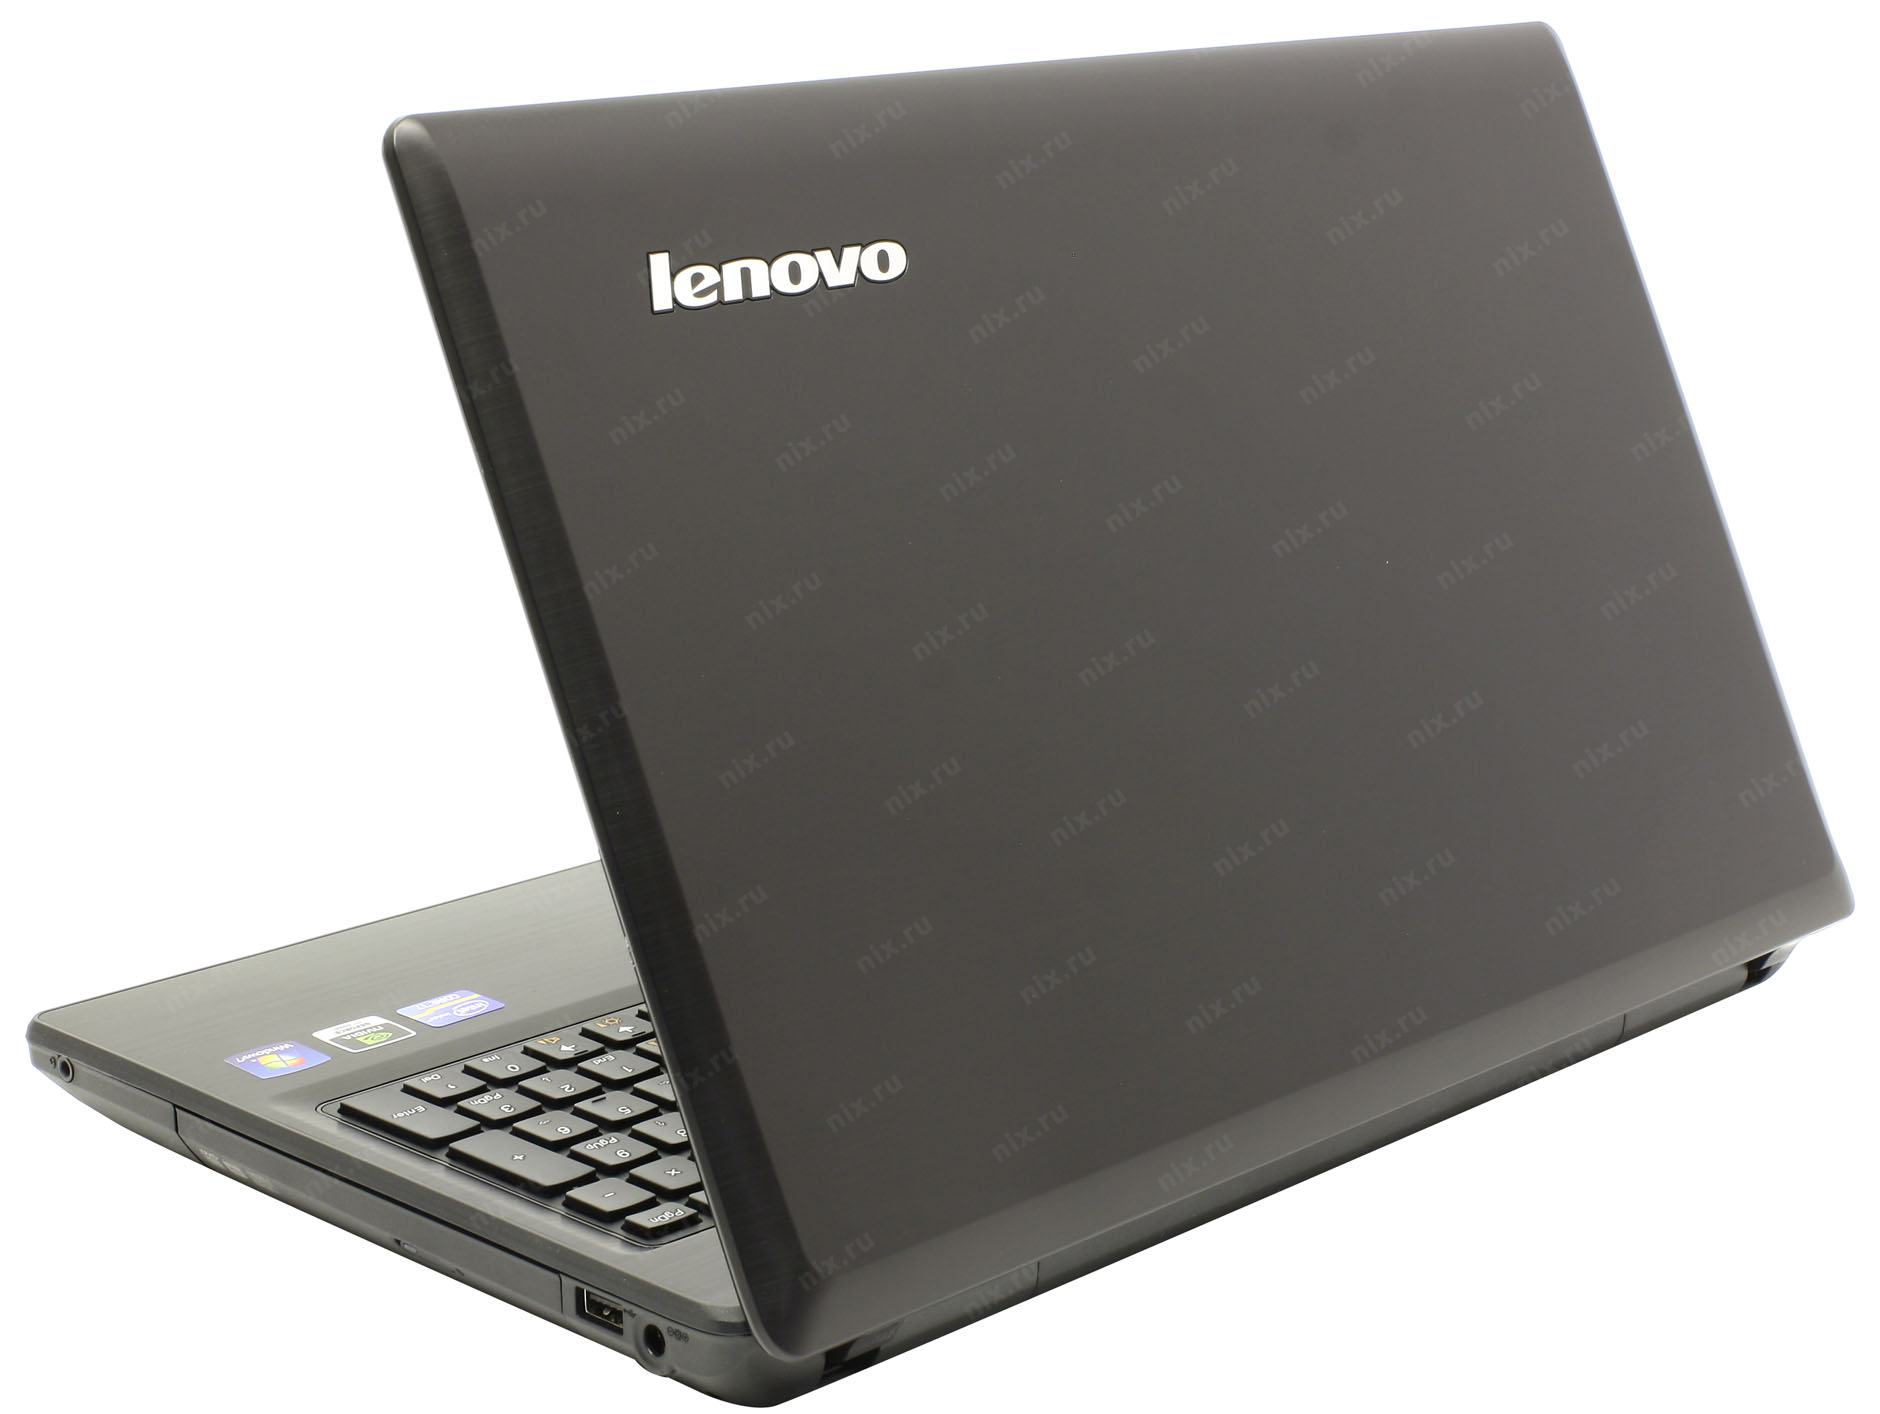 Купить Ноутбук Lenovo G580 В Москве